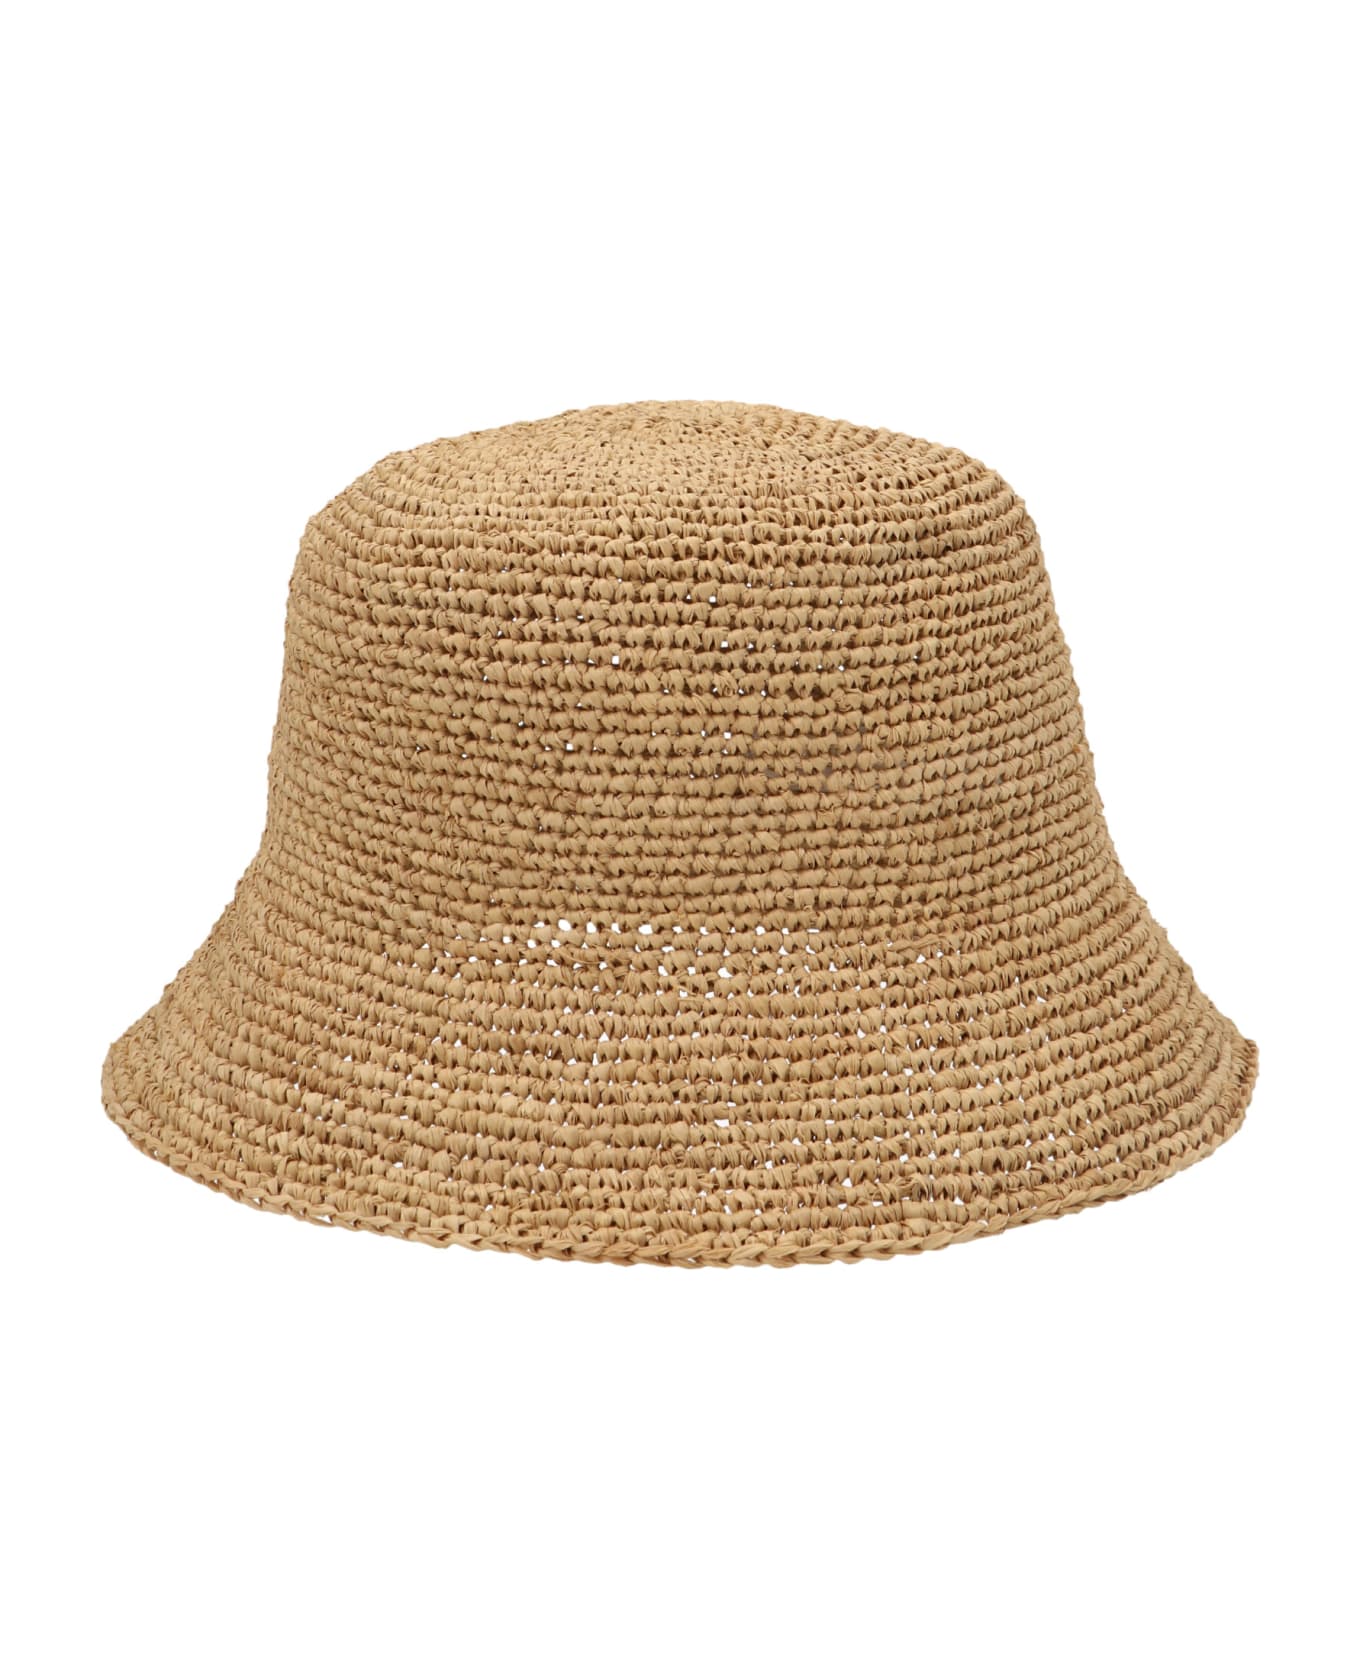 Ibeliv Andao Bucket Hat - Beige 帽子